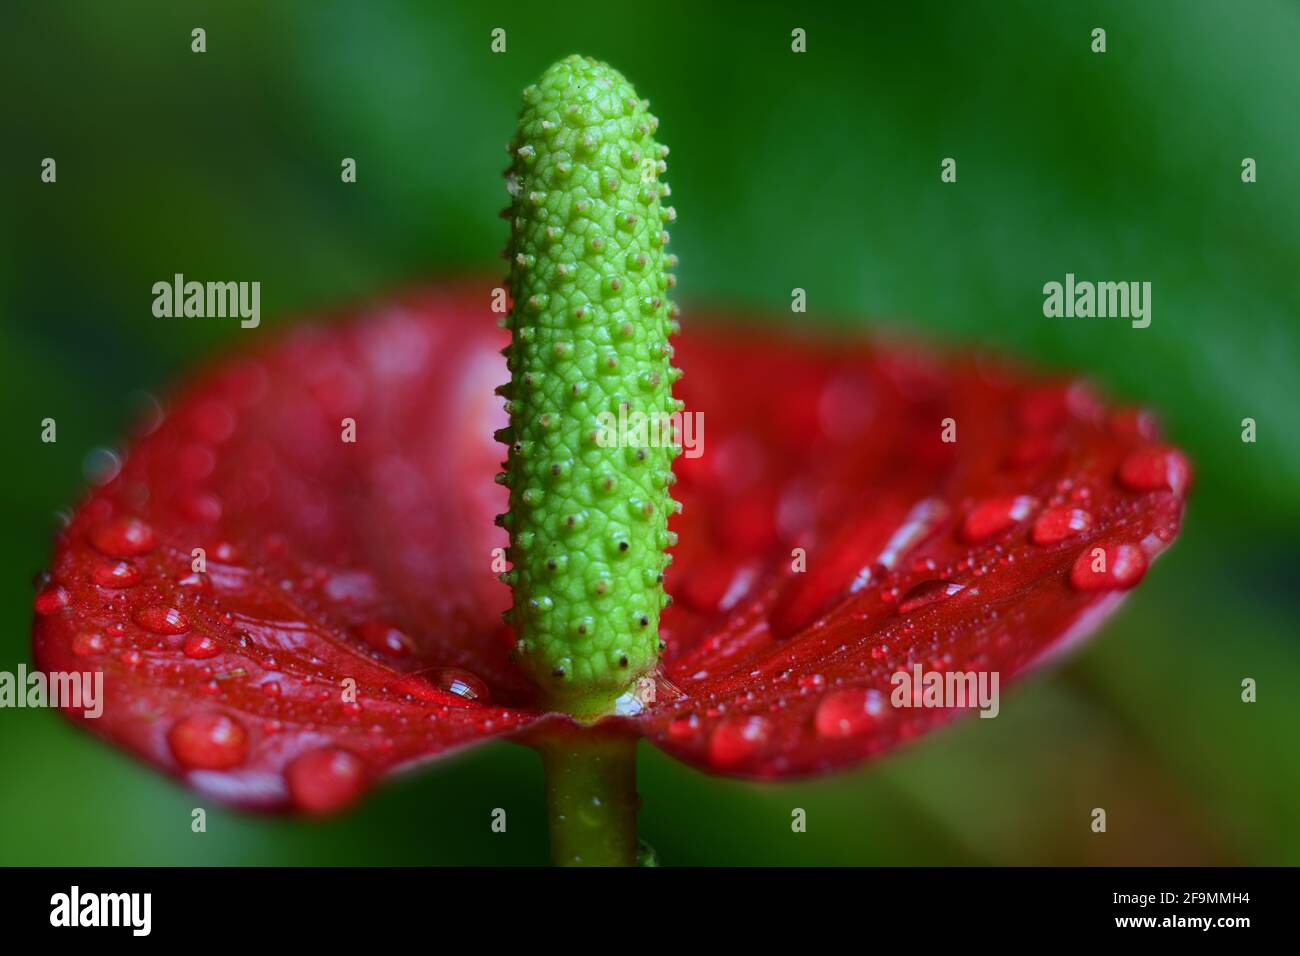 Extreme close-up image of Anthurium flower Stock Photo